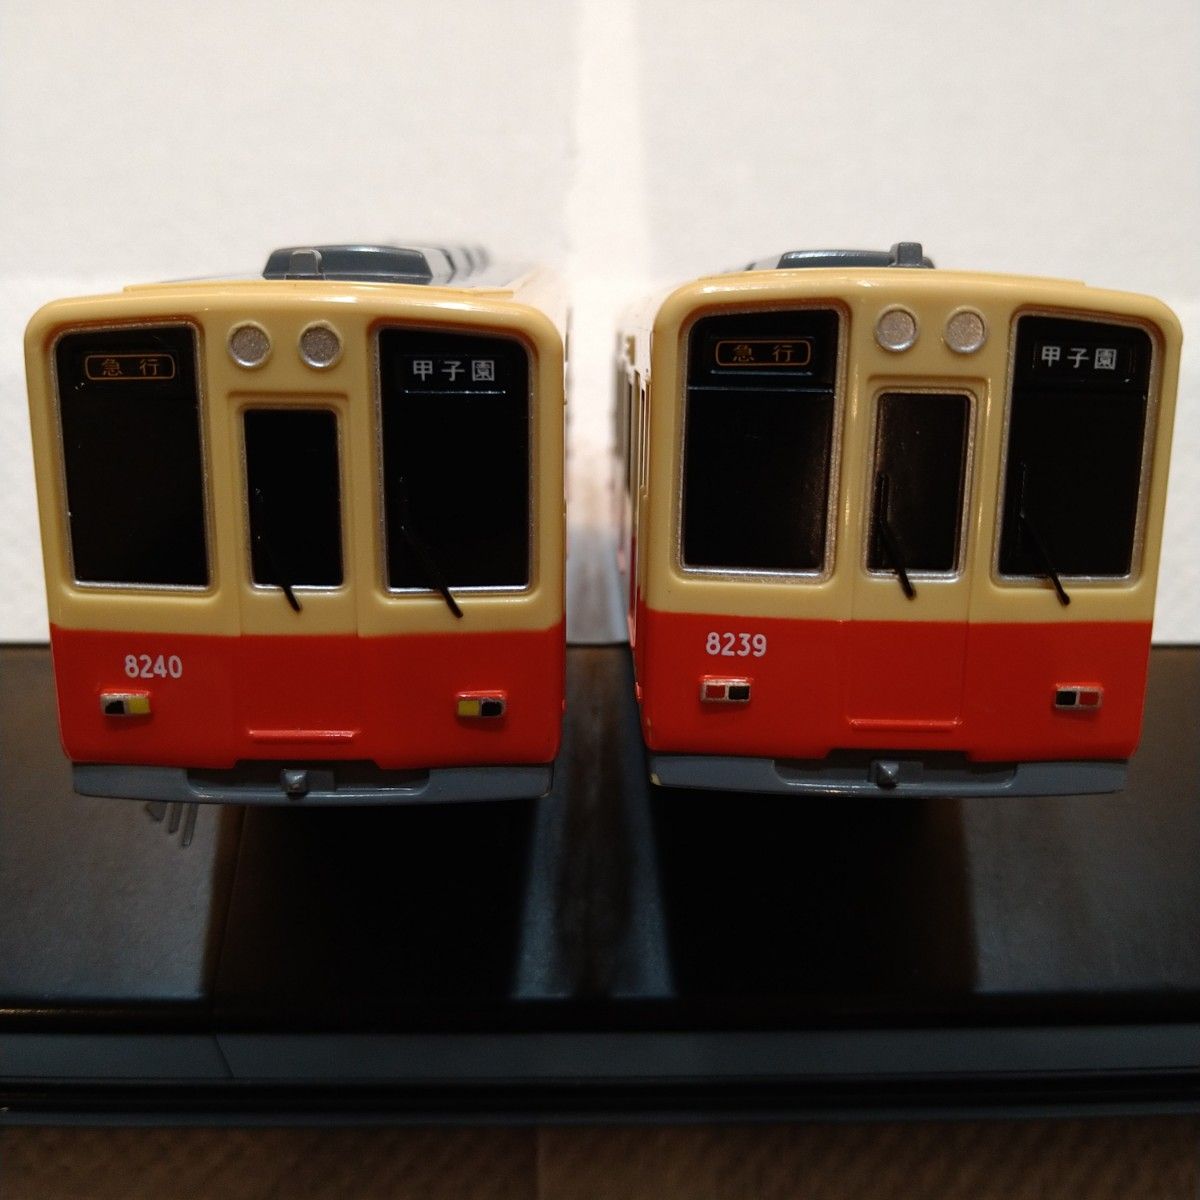 ８【廃盤・中間車なし】プラレール 阪神電車 8000系 赤胴車